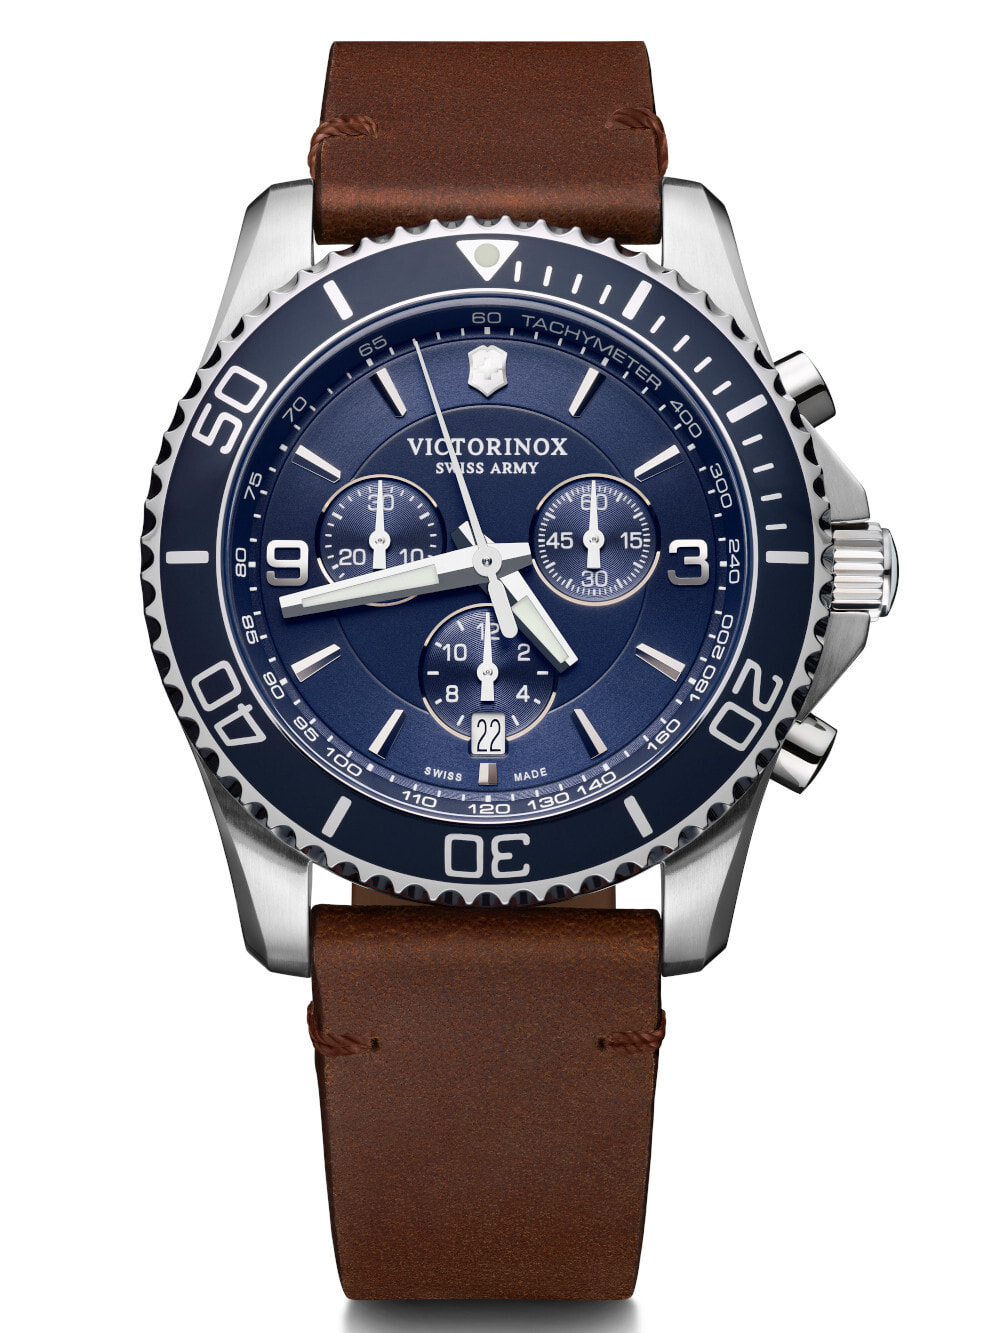 Мужские наручные часы с коричневым кожаным ремешком Victorinox 241865 Maverick Chronograph 43mm 10ATM